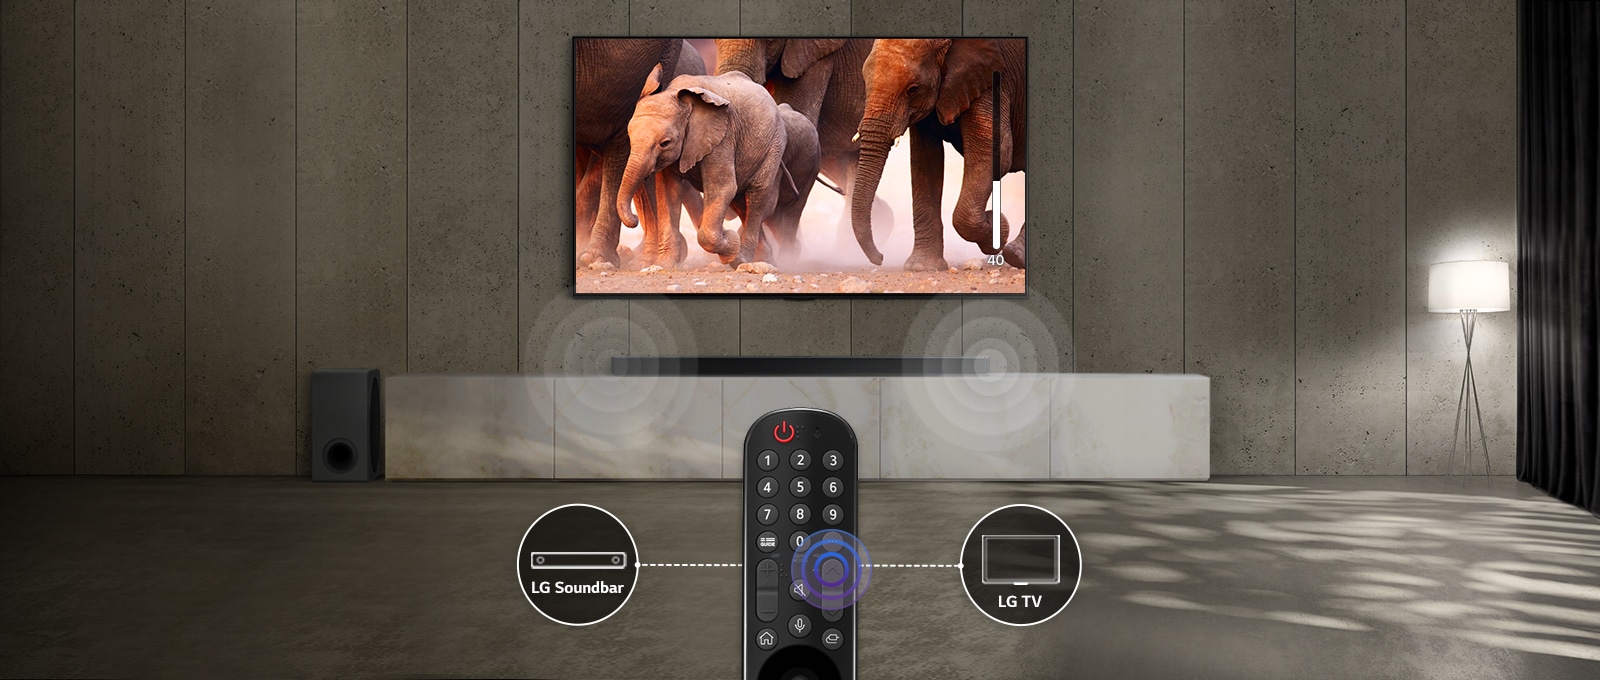 Μια τηλεόραση σε ένα δωμάτιο με διακριτικό φωτισμό, δείχνει εικόνες από ελέφαντες που περνούν. Και υπάρχει ένα ηχητικό εφέ στο soundbar που βρίσκεται κάτω από την τηλεόραση. Στο κάτω μέρος της εικόνας υπάρχει ένα τηλεχειριστήριο τηλεόρασης και το soundbar και το εικονίδιο της τηλεόρασης είναι συνδεδεμένα στα αριστερά και δεξιά του τηλεχειριστηρίου.